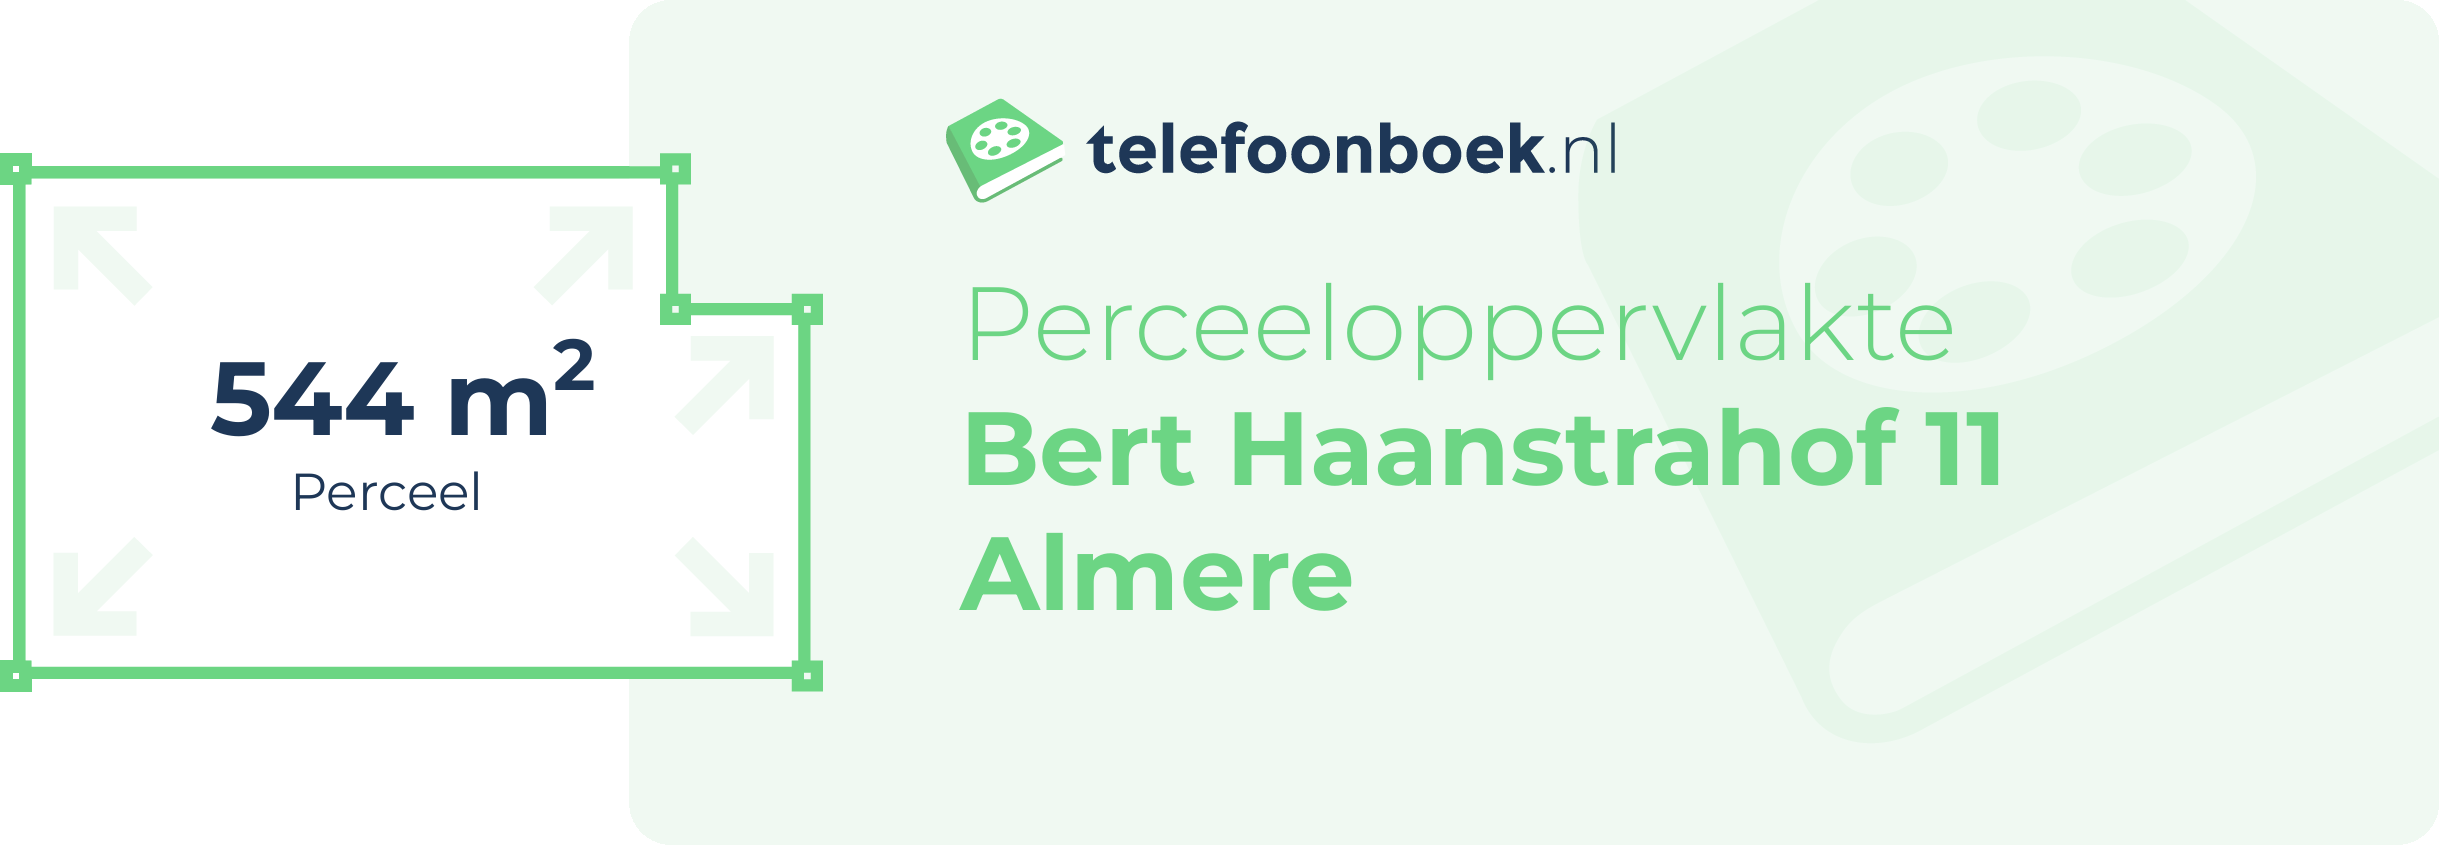 Perceeloppervlakte Bert Haanstrahof 11 Almere